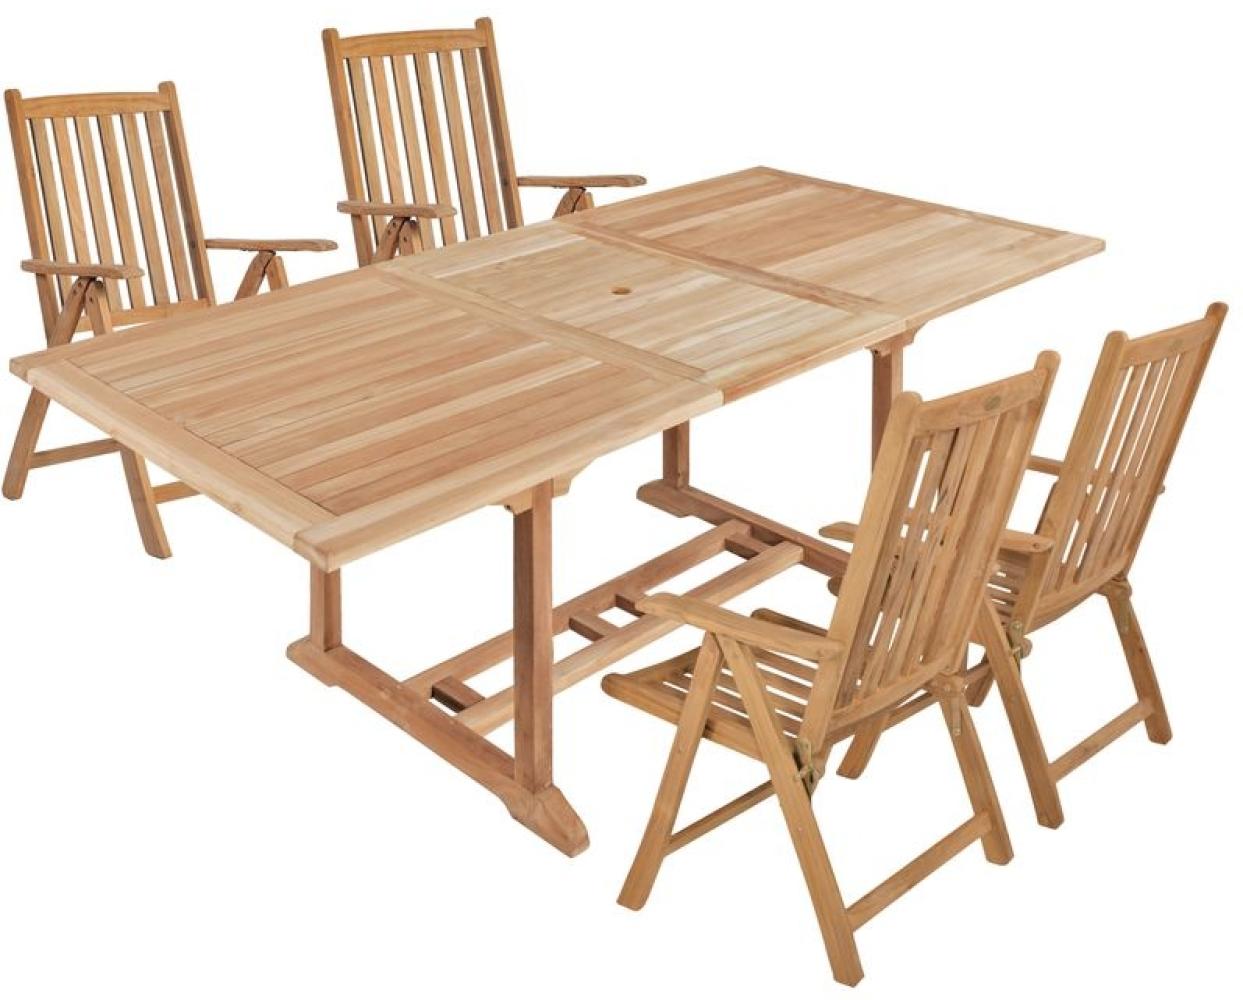 5tlg. Teak Tischgruppe Gartenmöbel Gartentisch Stuhl Garten Hochlehner Tisch Bild 1